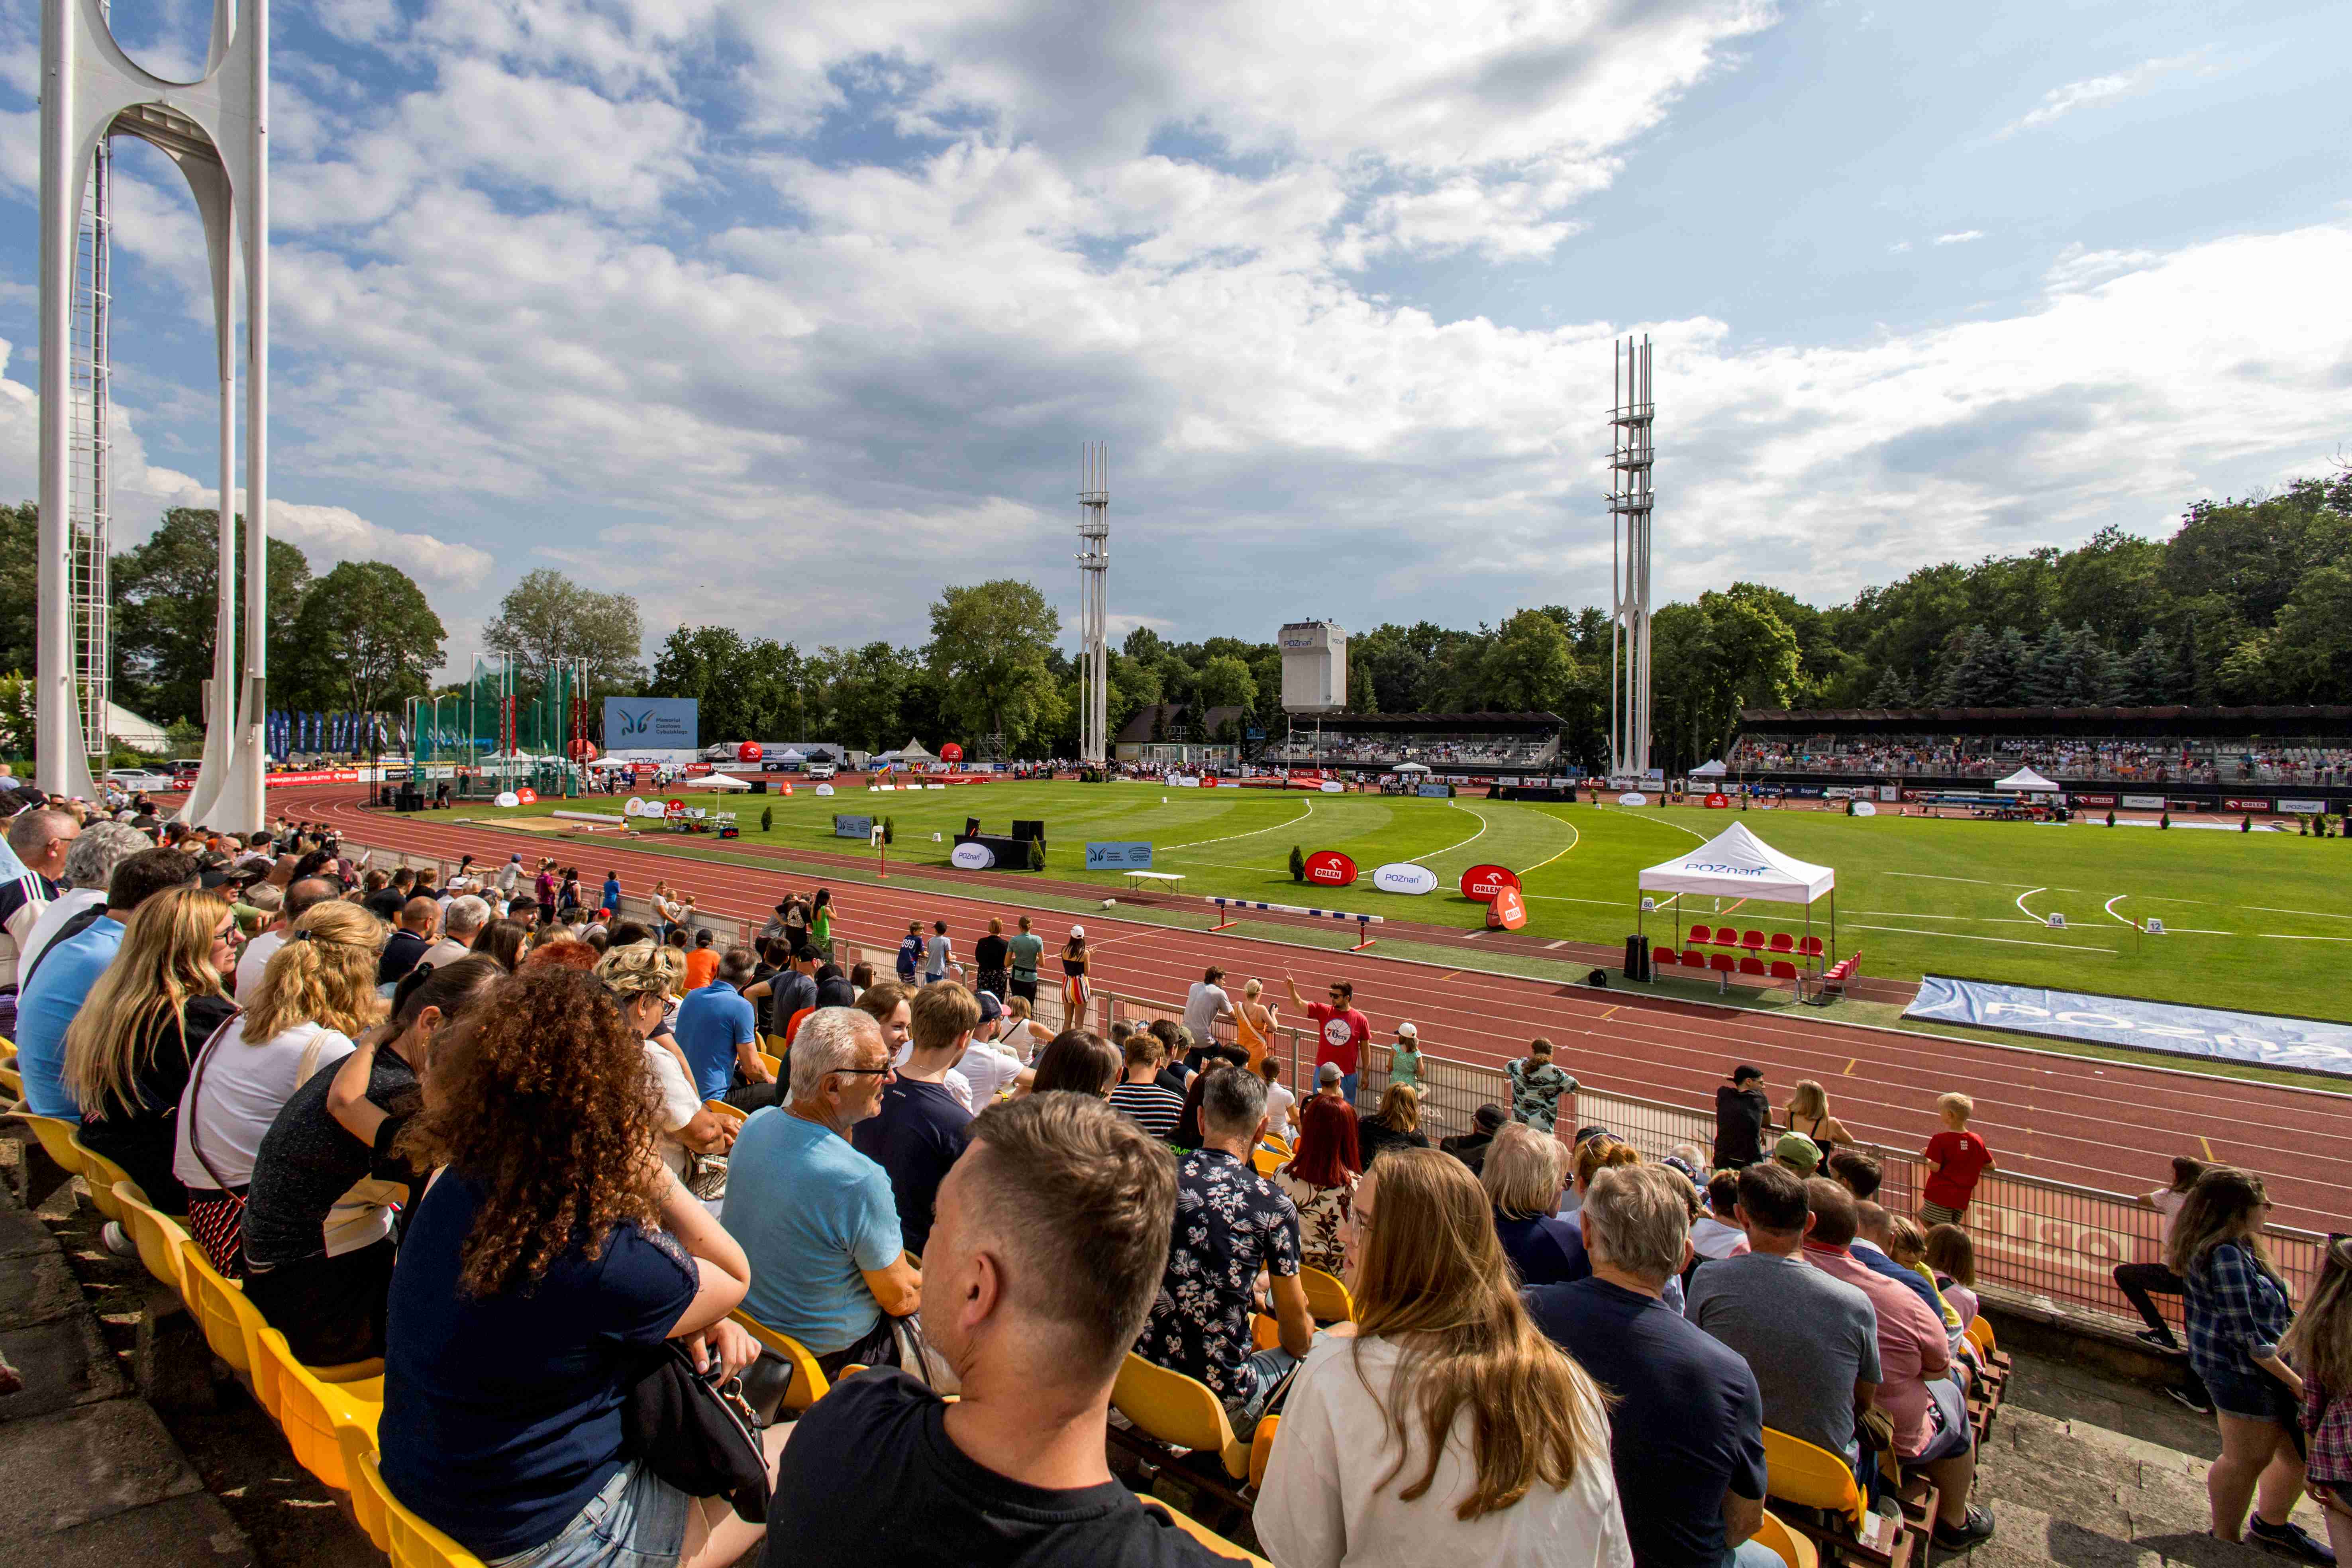 Stadion Golęcin podczas zawodów lekkoatletycznych